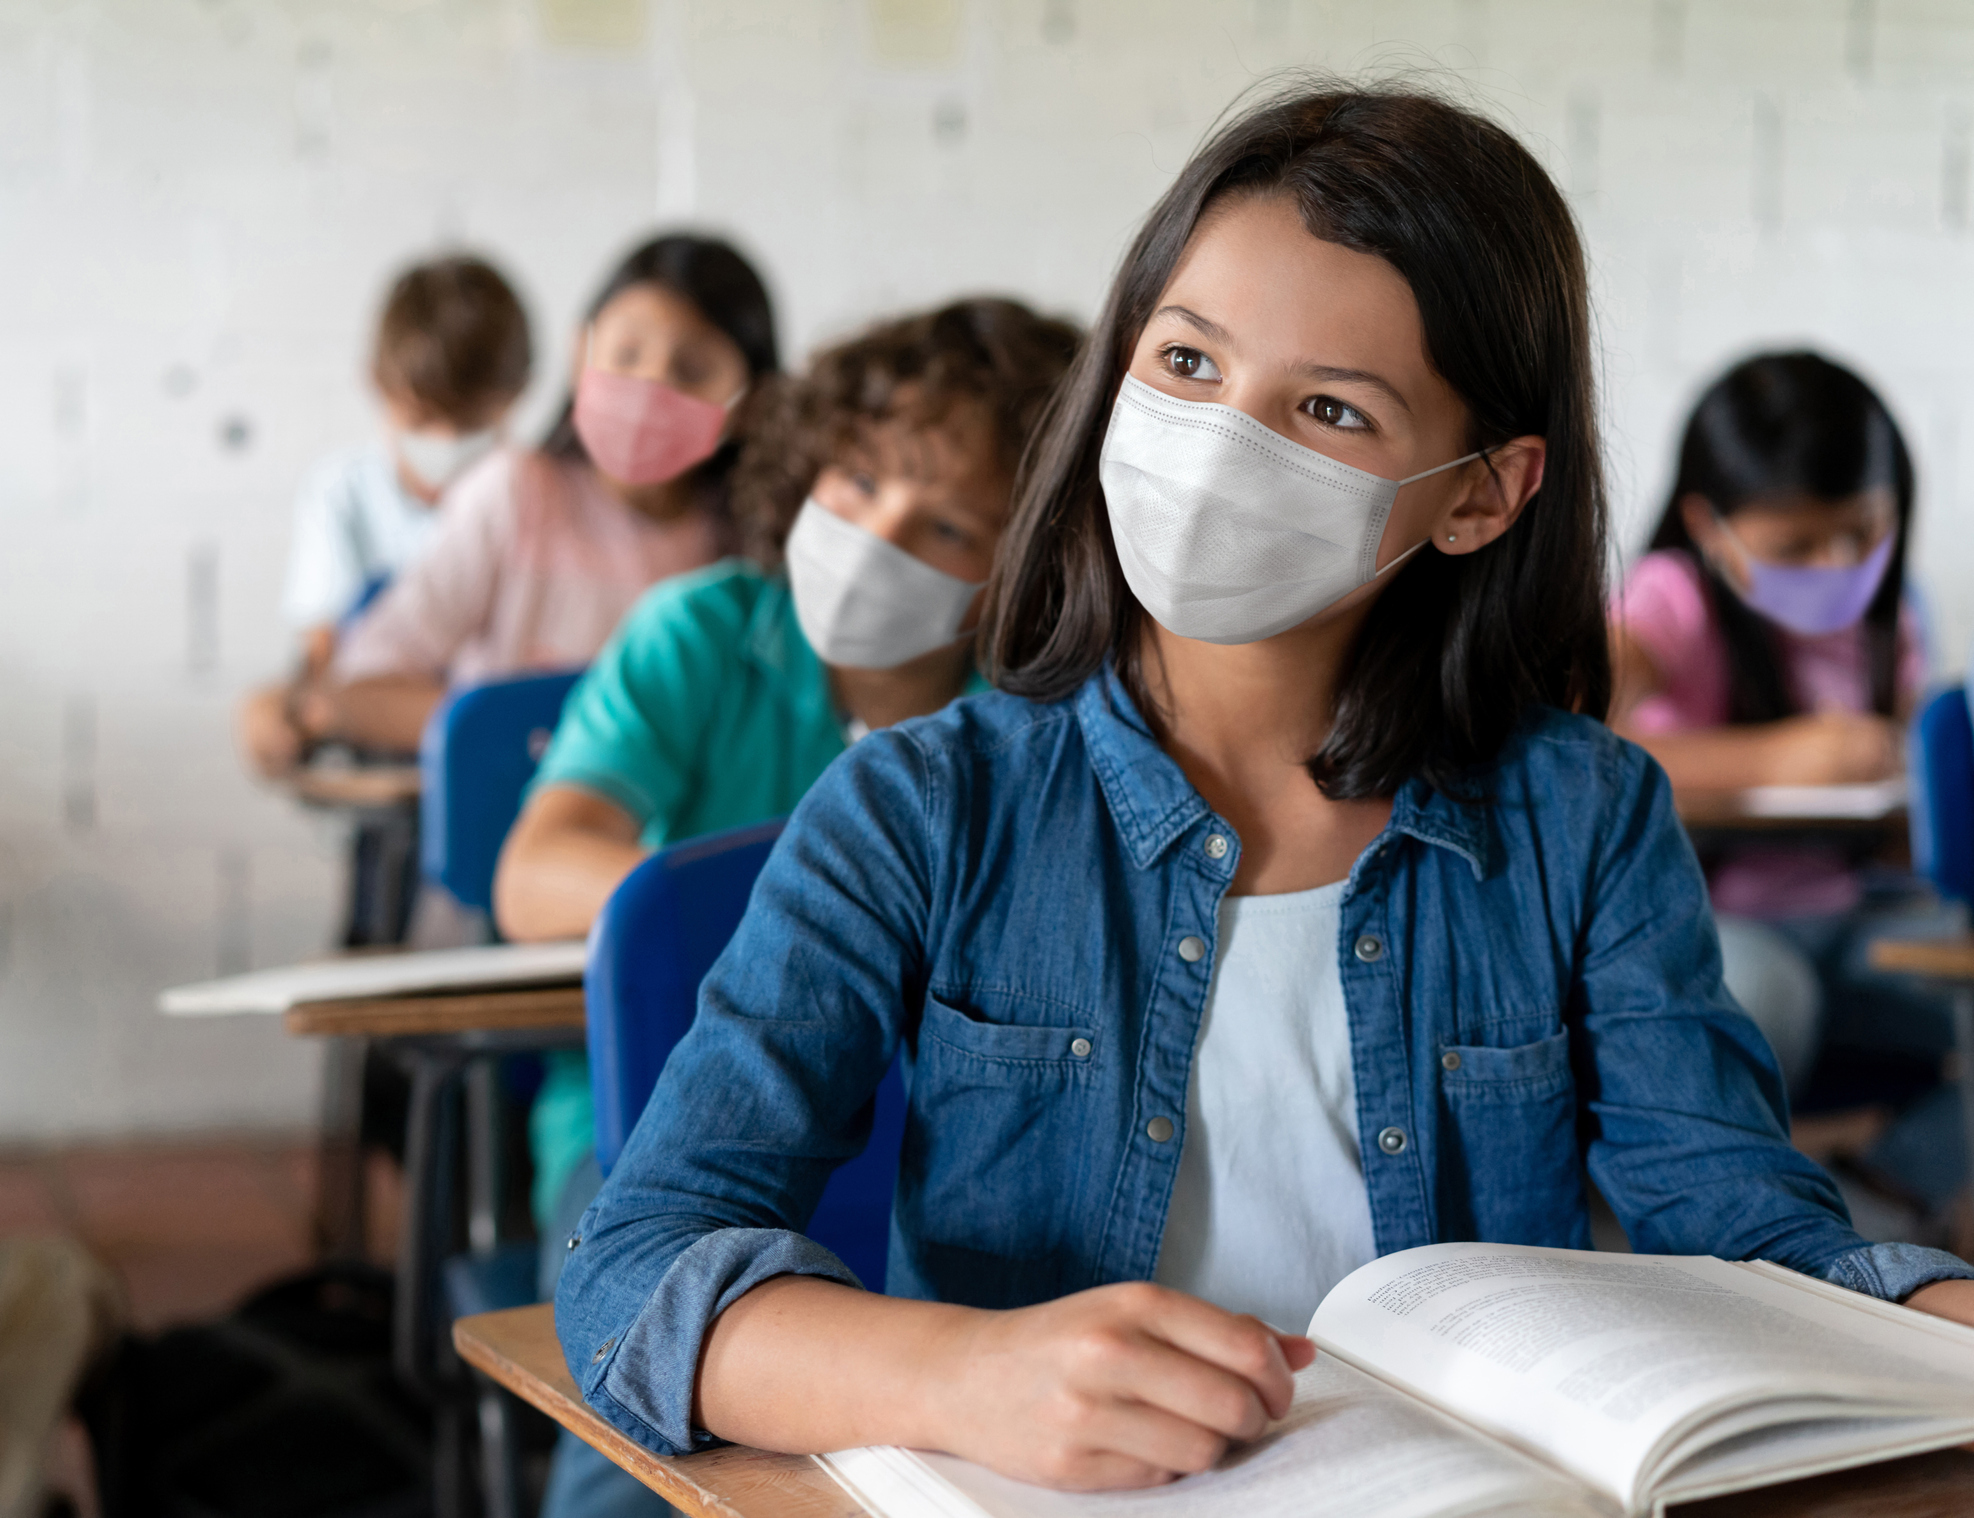 Three children in classroom wearing masks